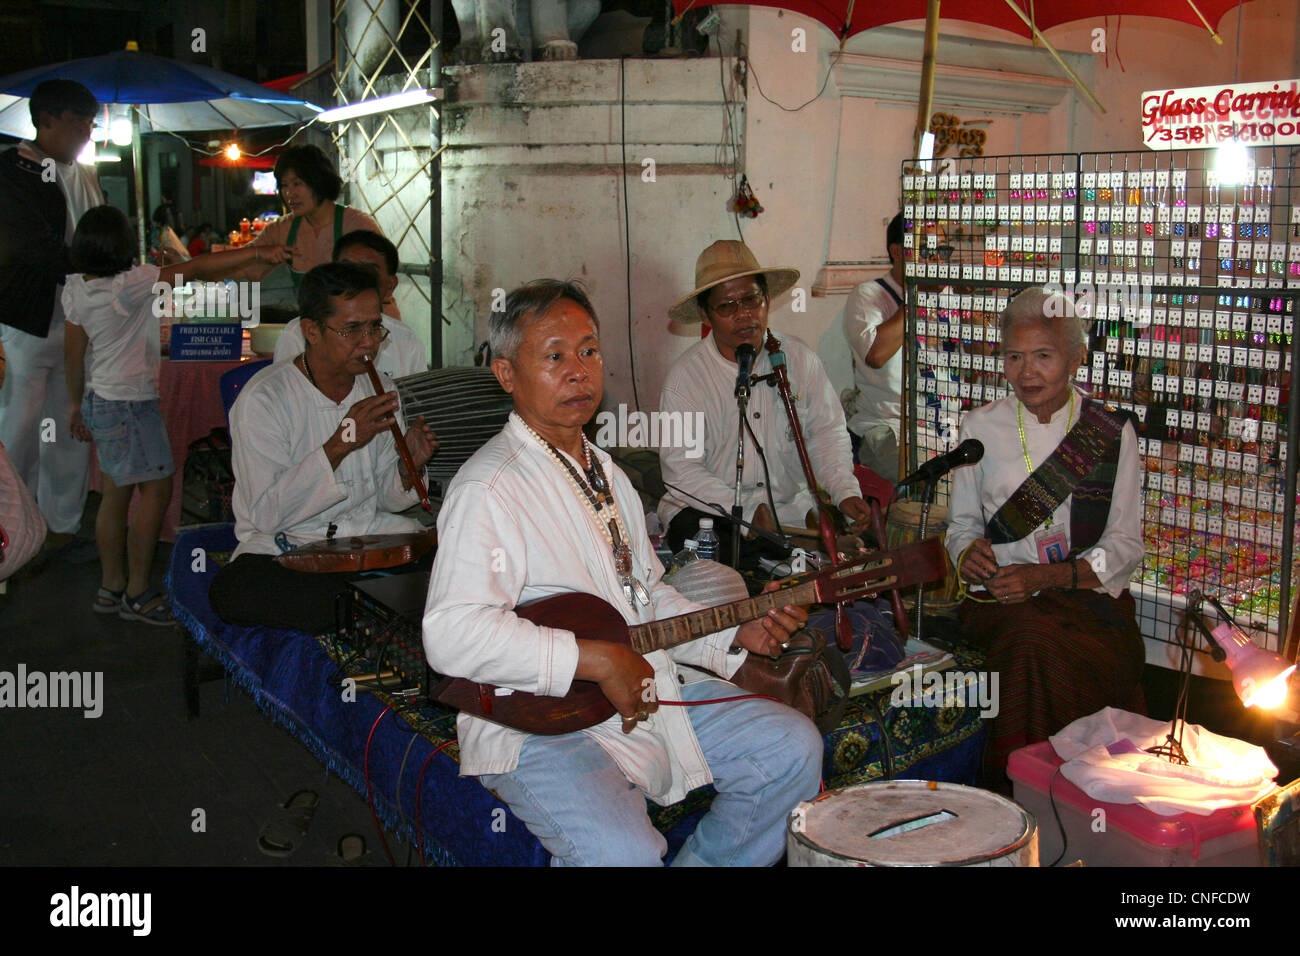 Lanna locale di musica,strumento tradizionale sulle persone a piedi street, tanon rachdumnean, Foto Stock